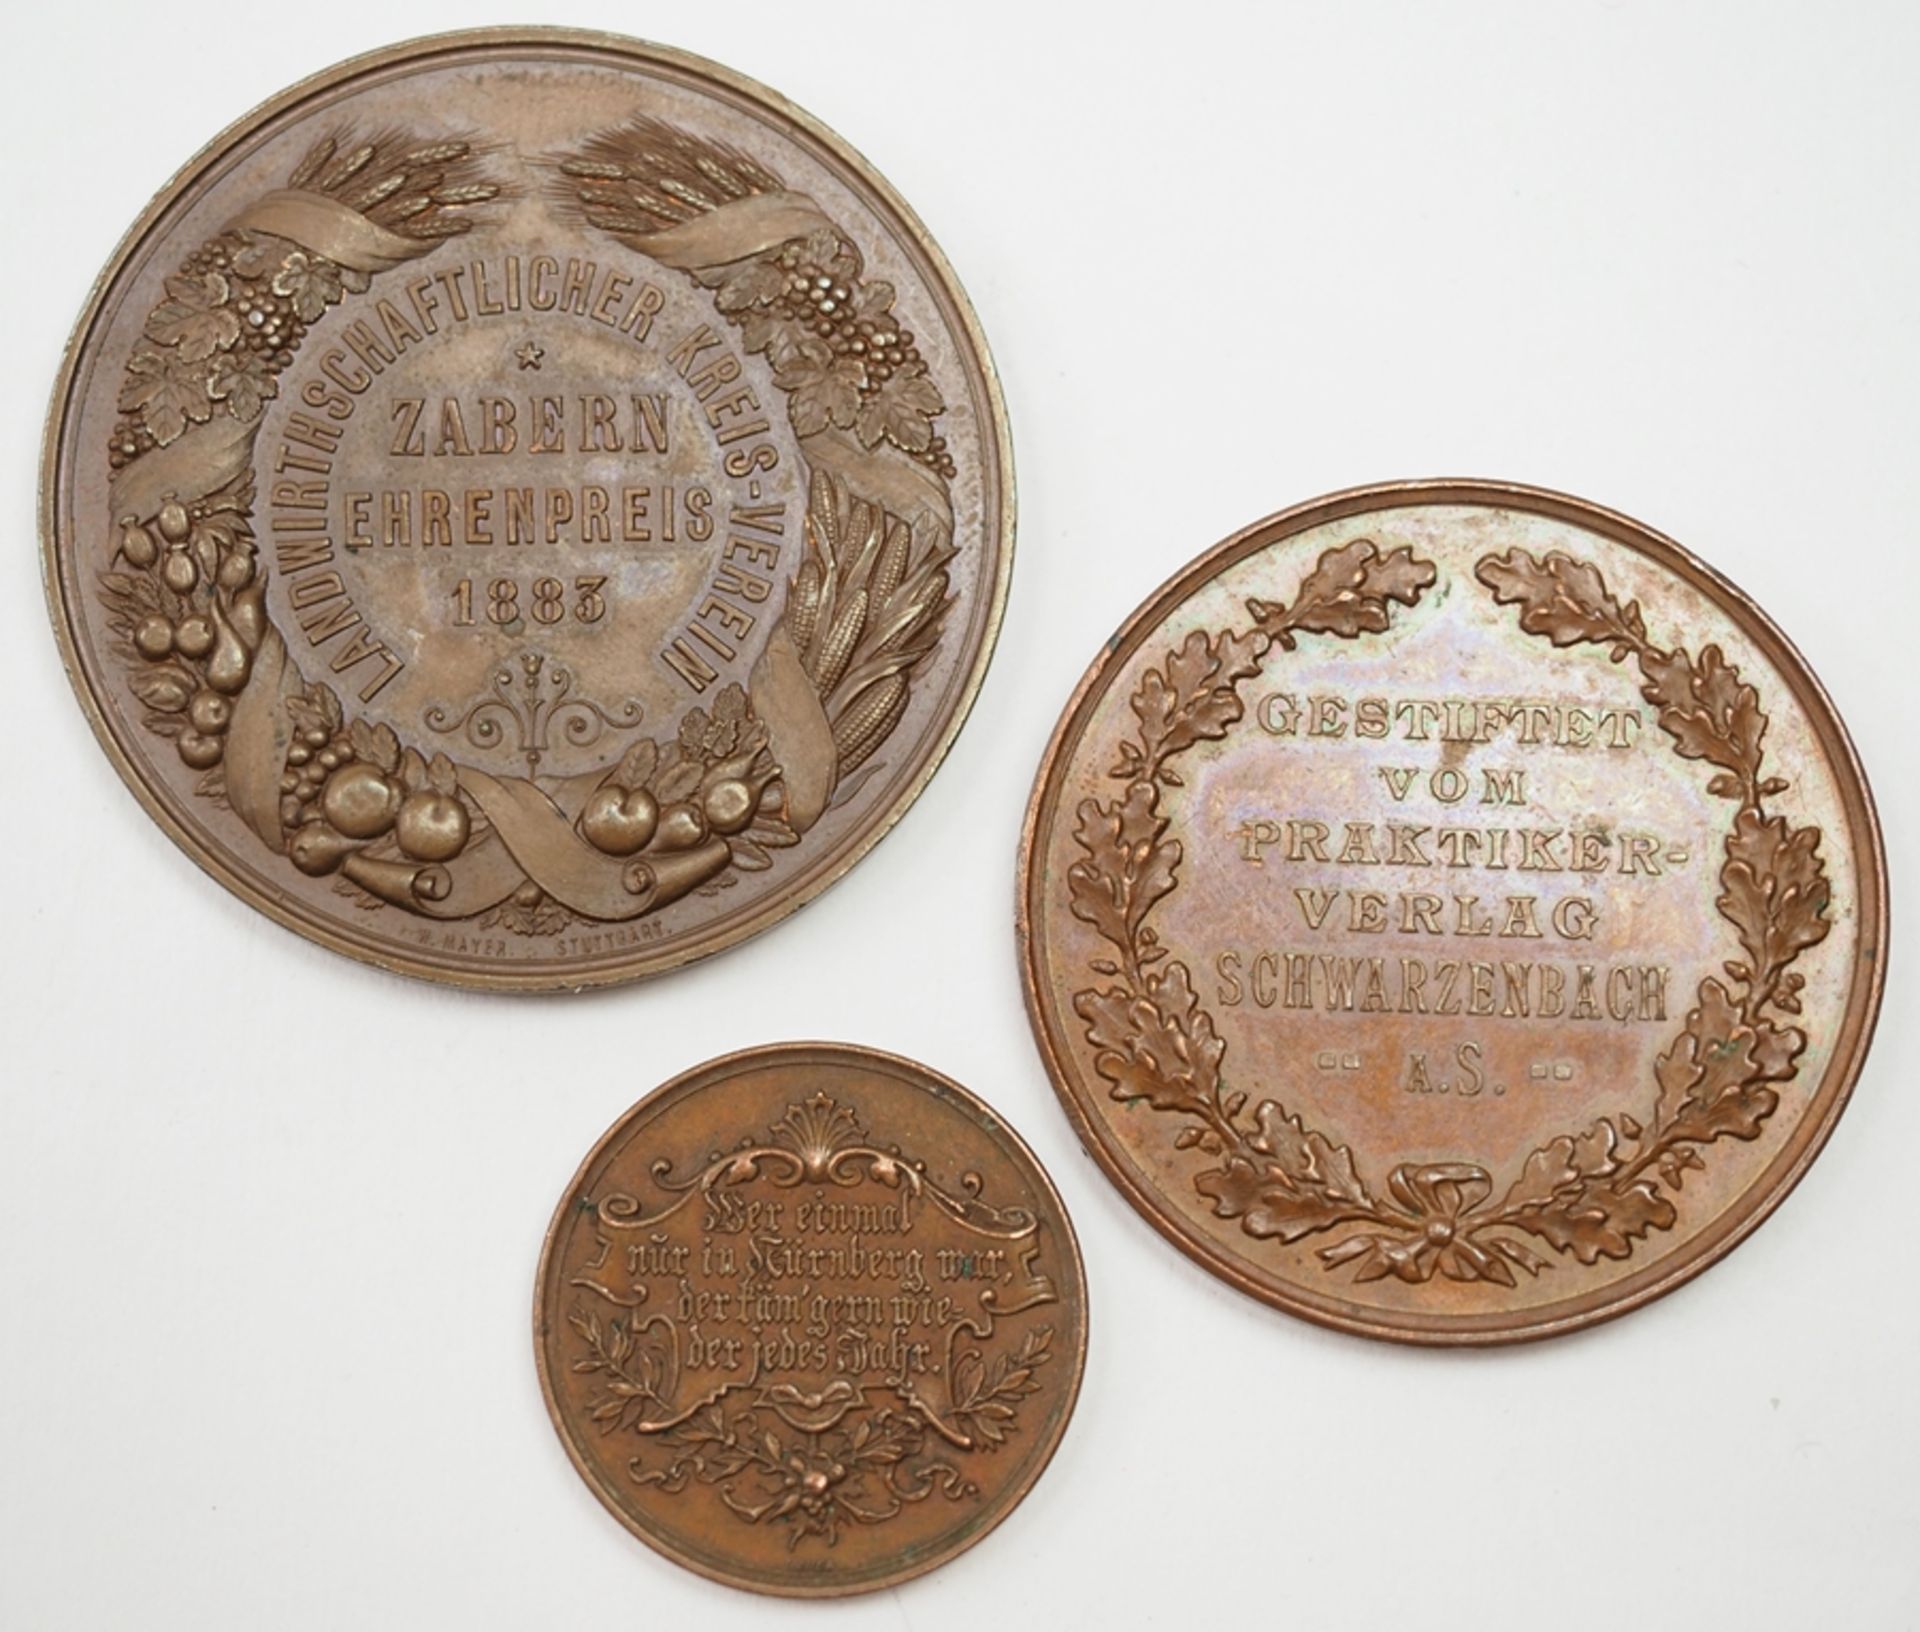 Lot von 3 Bronze Medaillen. - Image 2 of 2